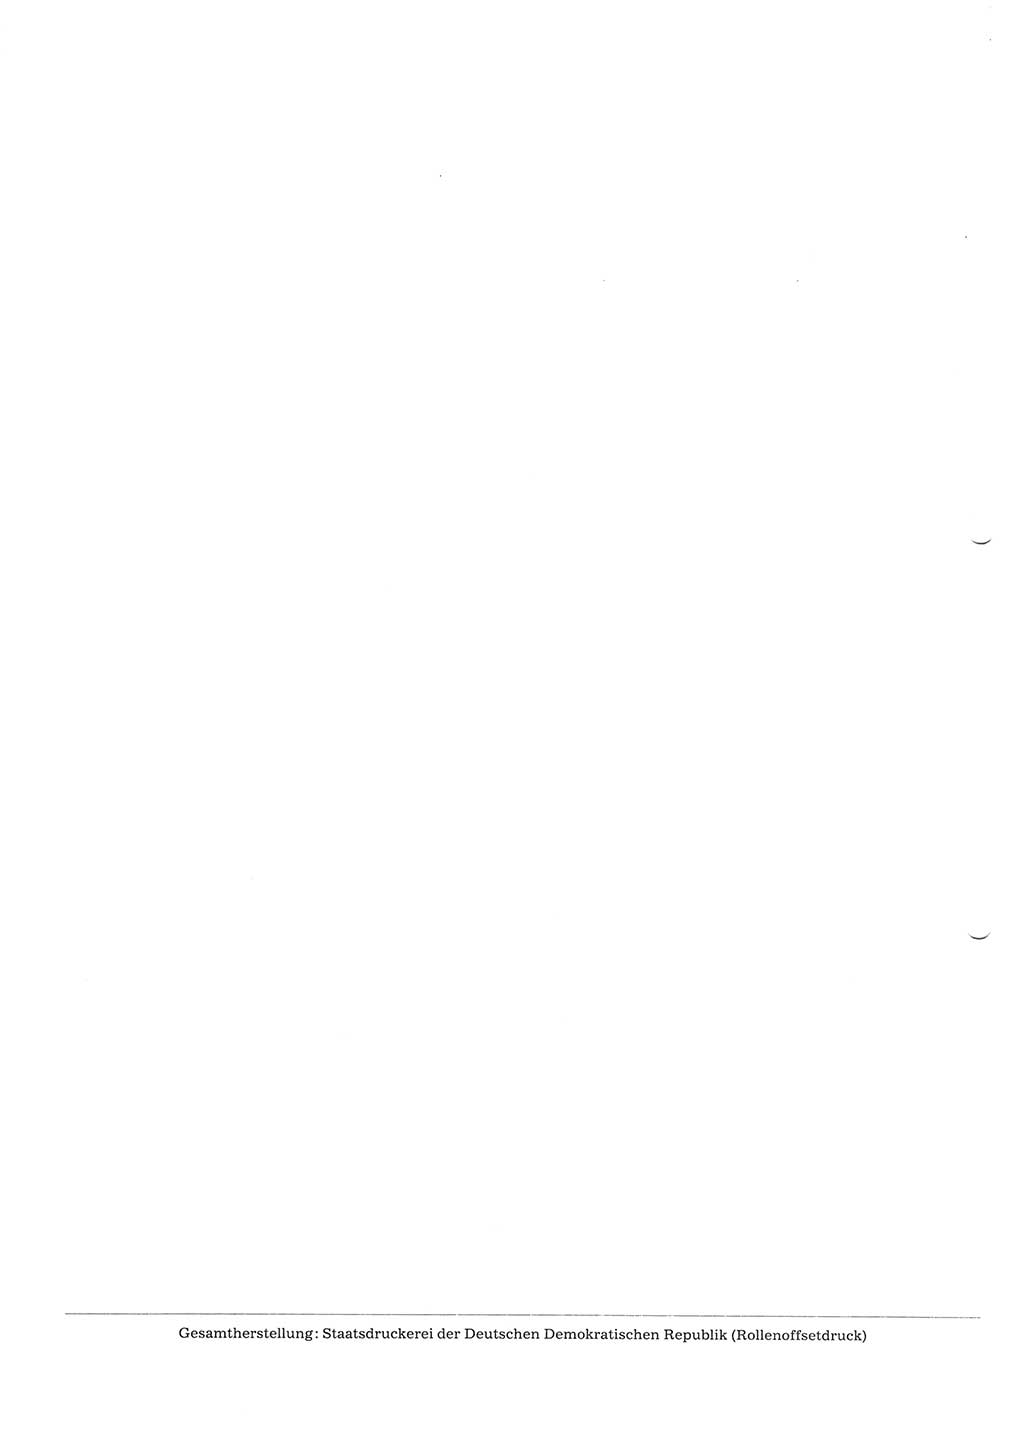 Tagungen der Volkskammer (VK) der Deutschen Demokratischen Republik (DDR), 10. Wahlperiode 1990, Seite 284 (VK. DDR 10. WP. 1990, Prot. Tg. 1-38, 5.4.-2.10.1990, S. 284)